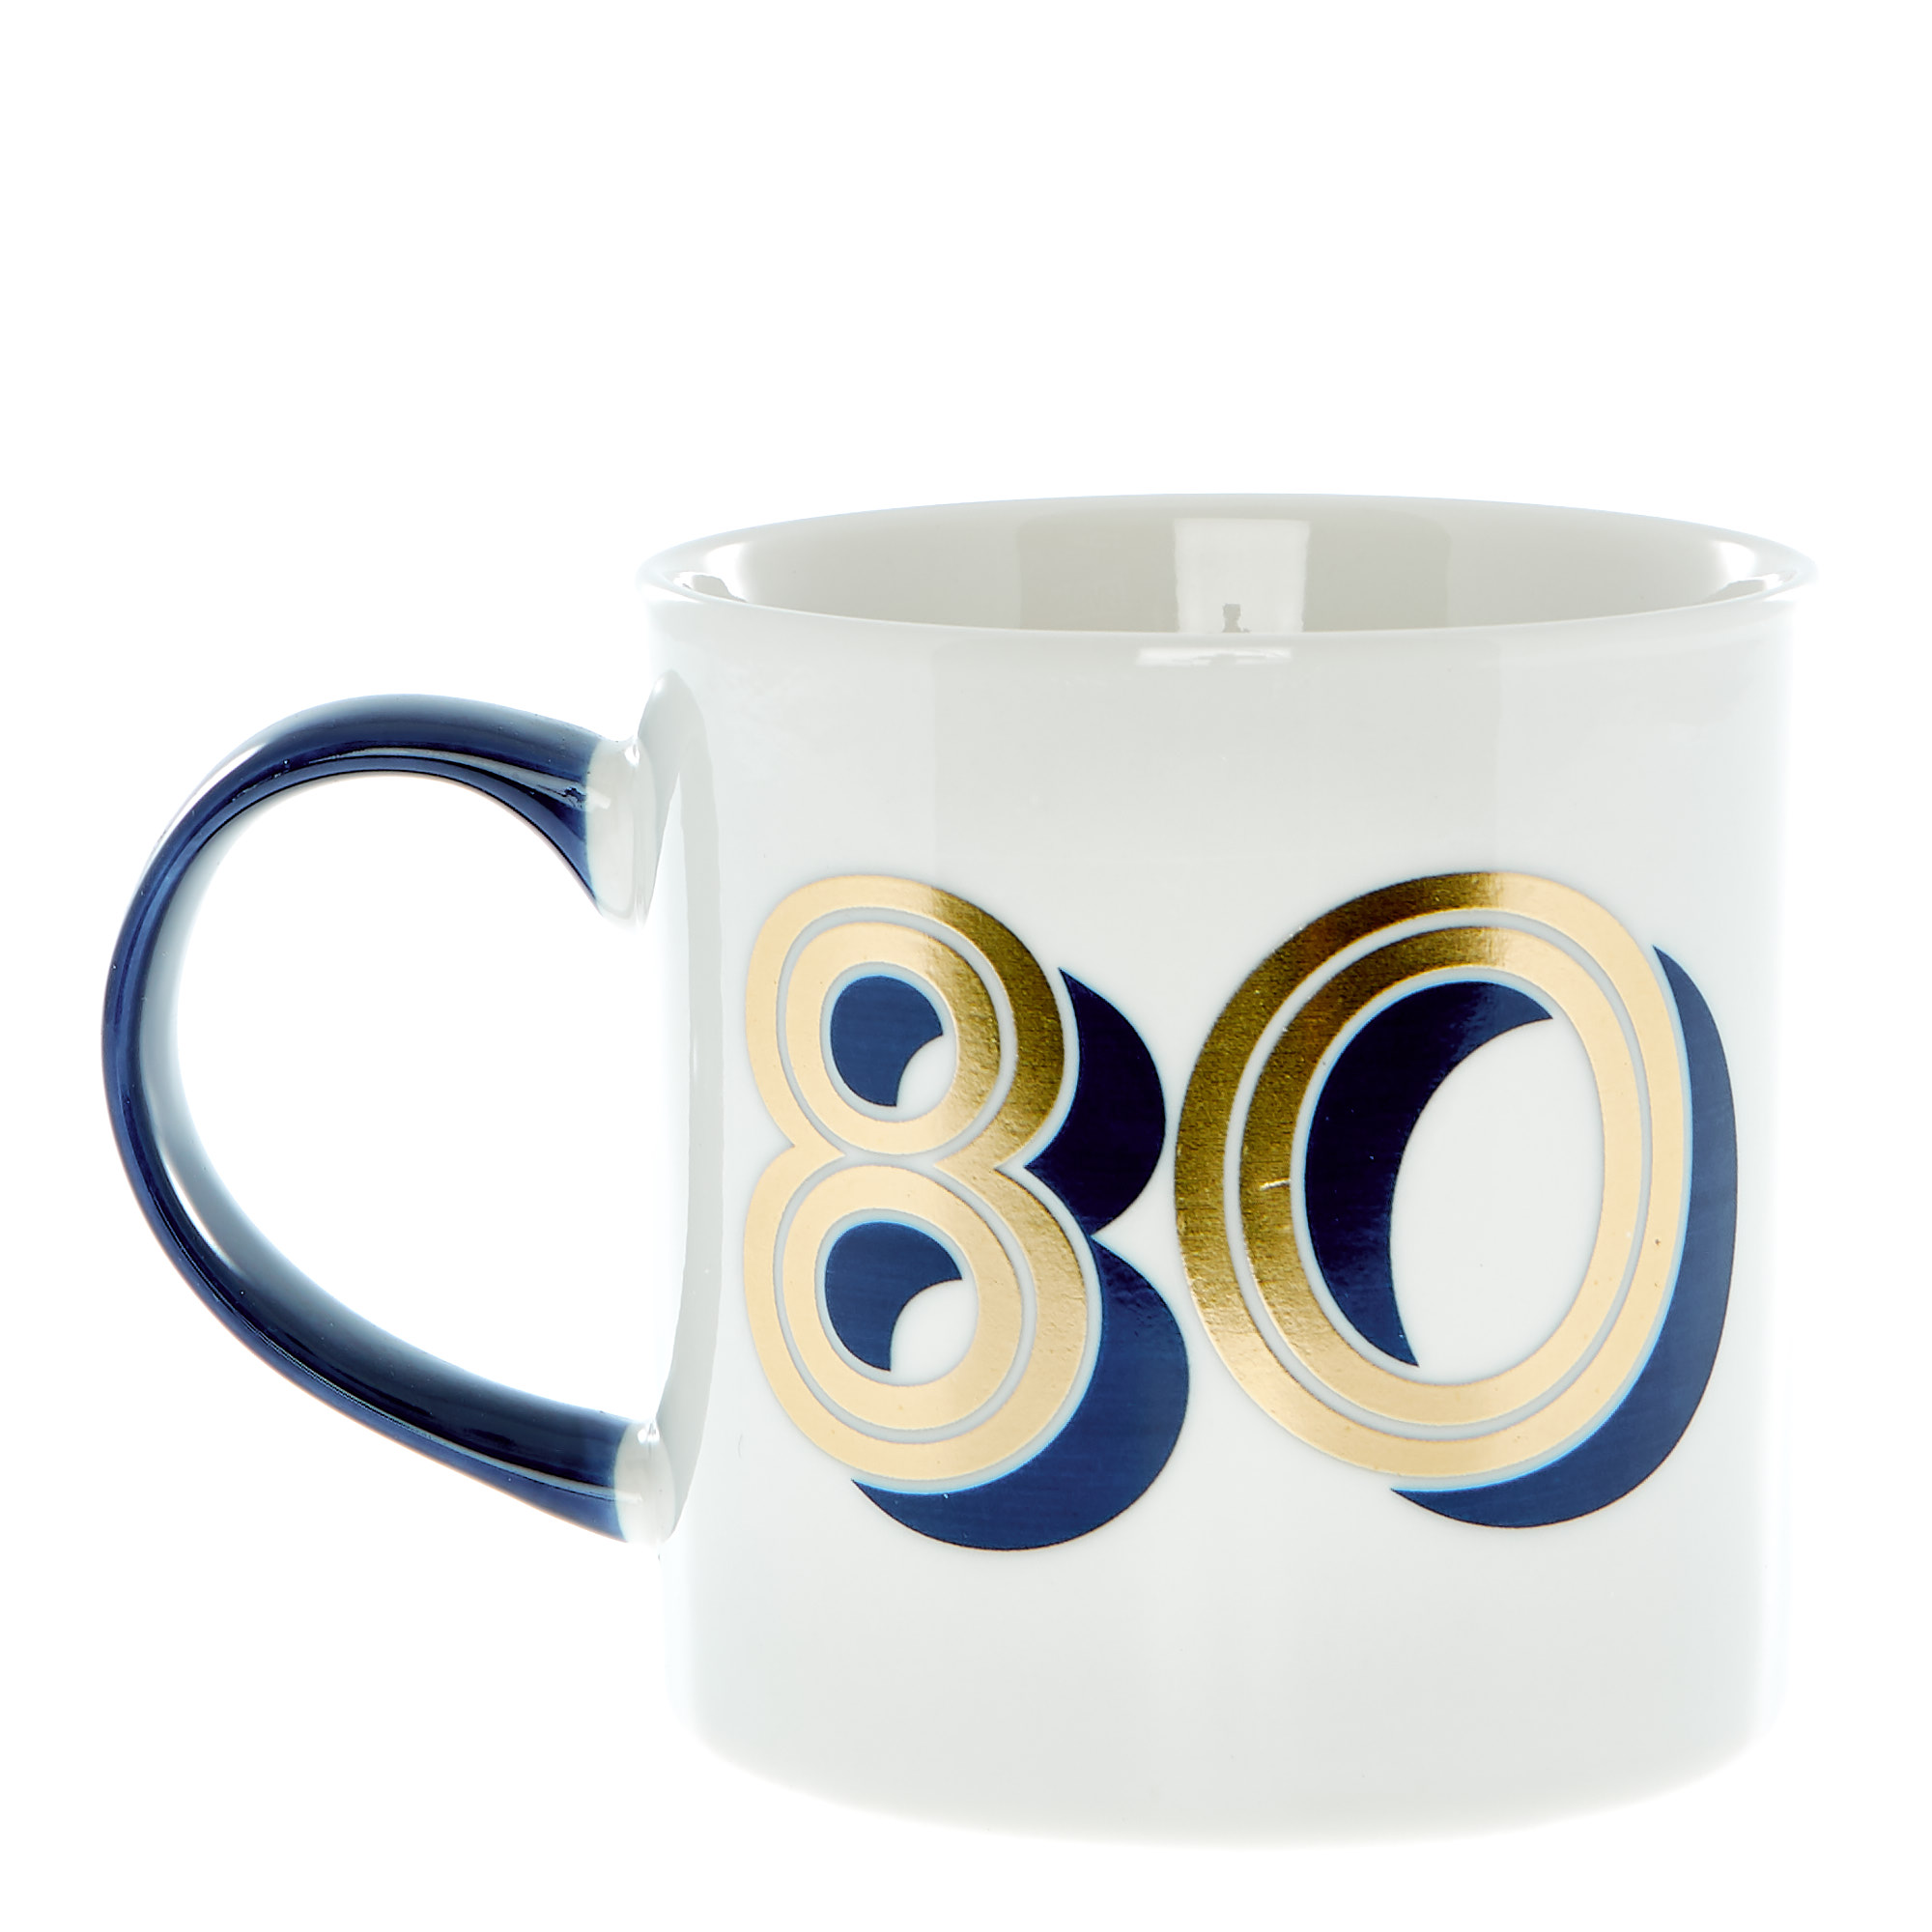 80th Birthday Mug In A Box - Blue & Gold 